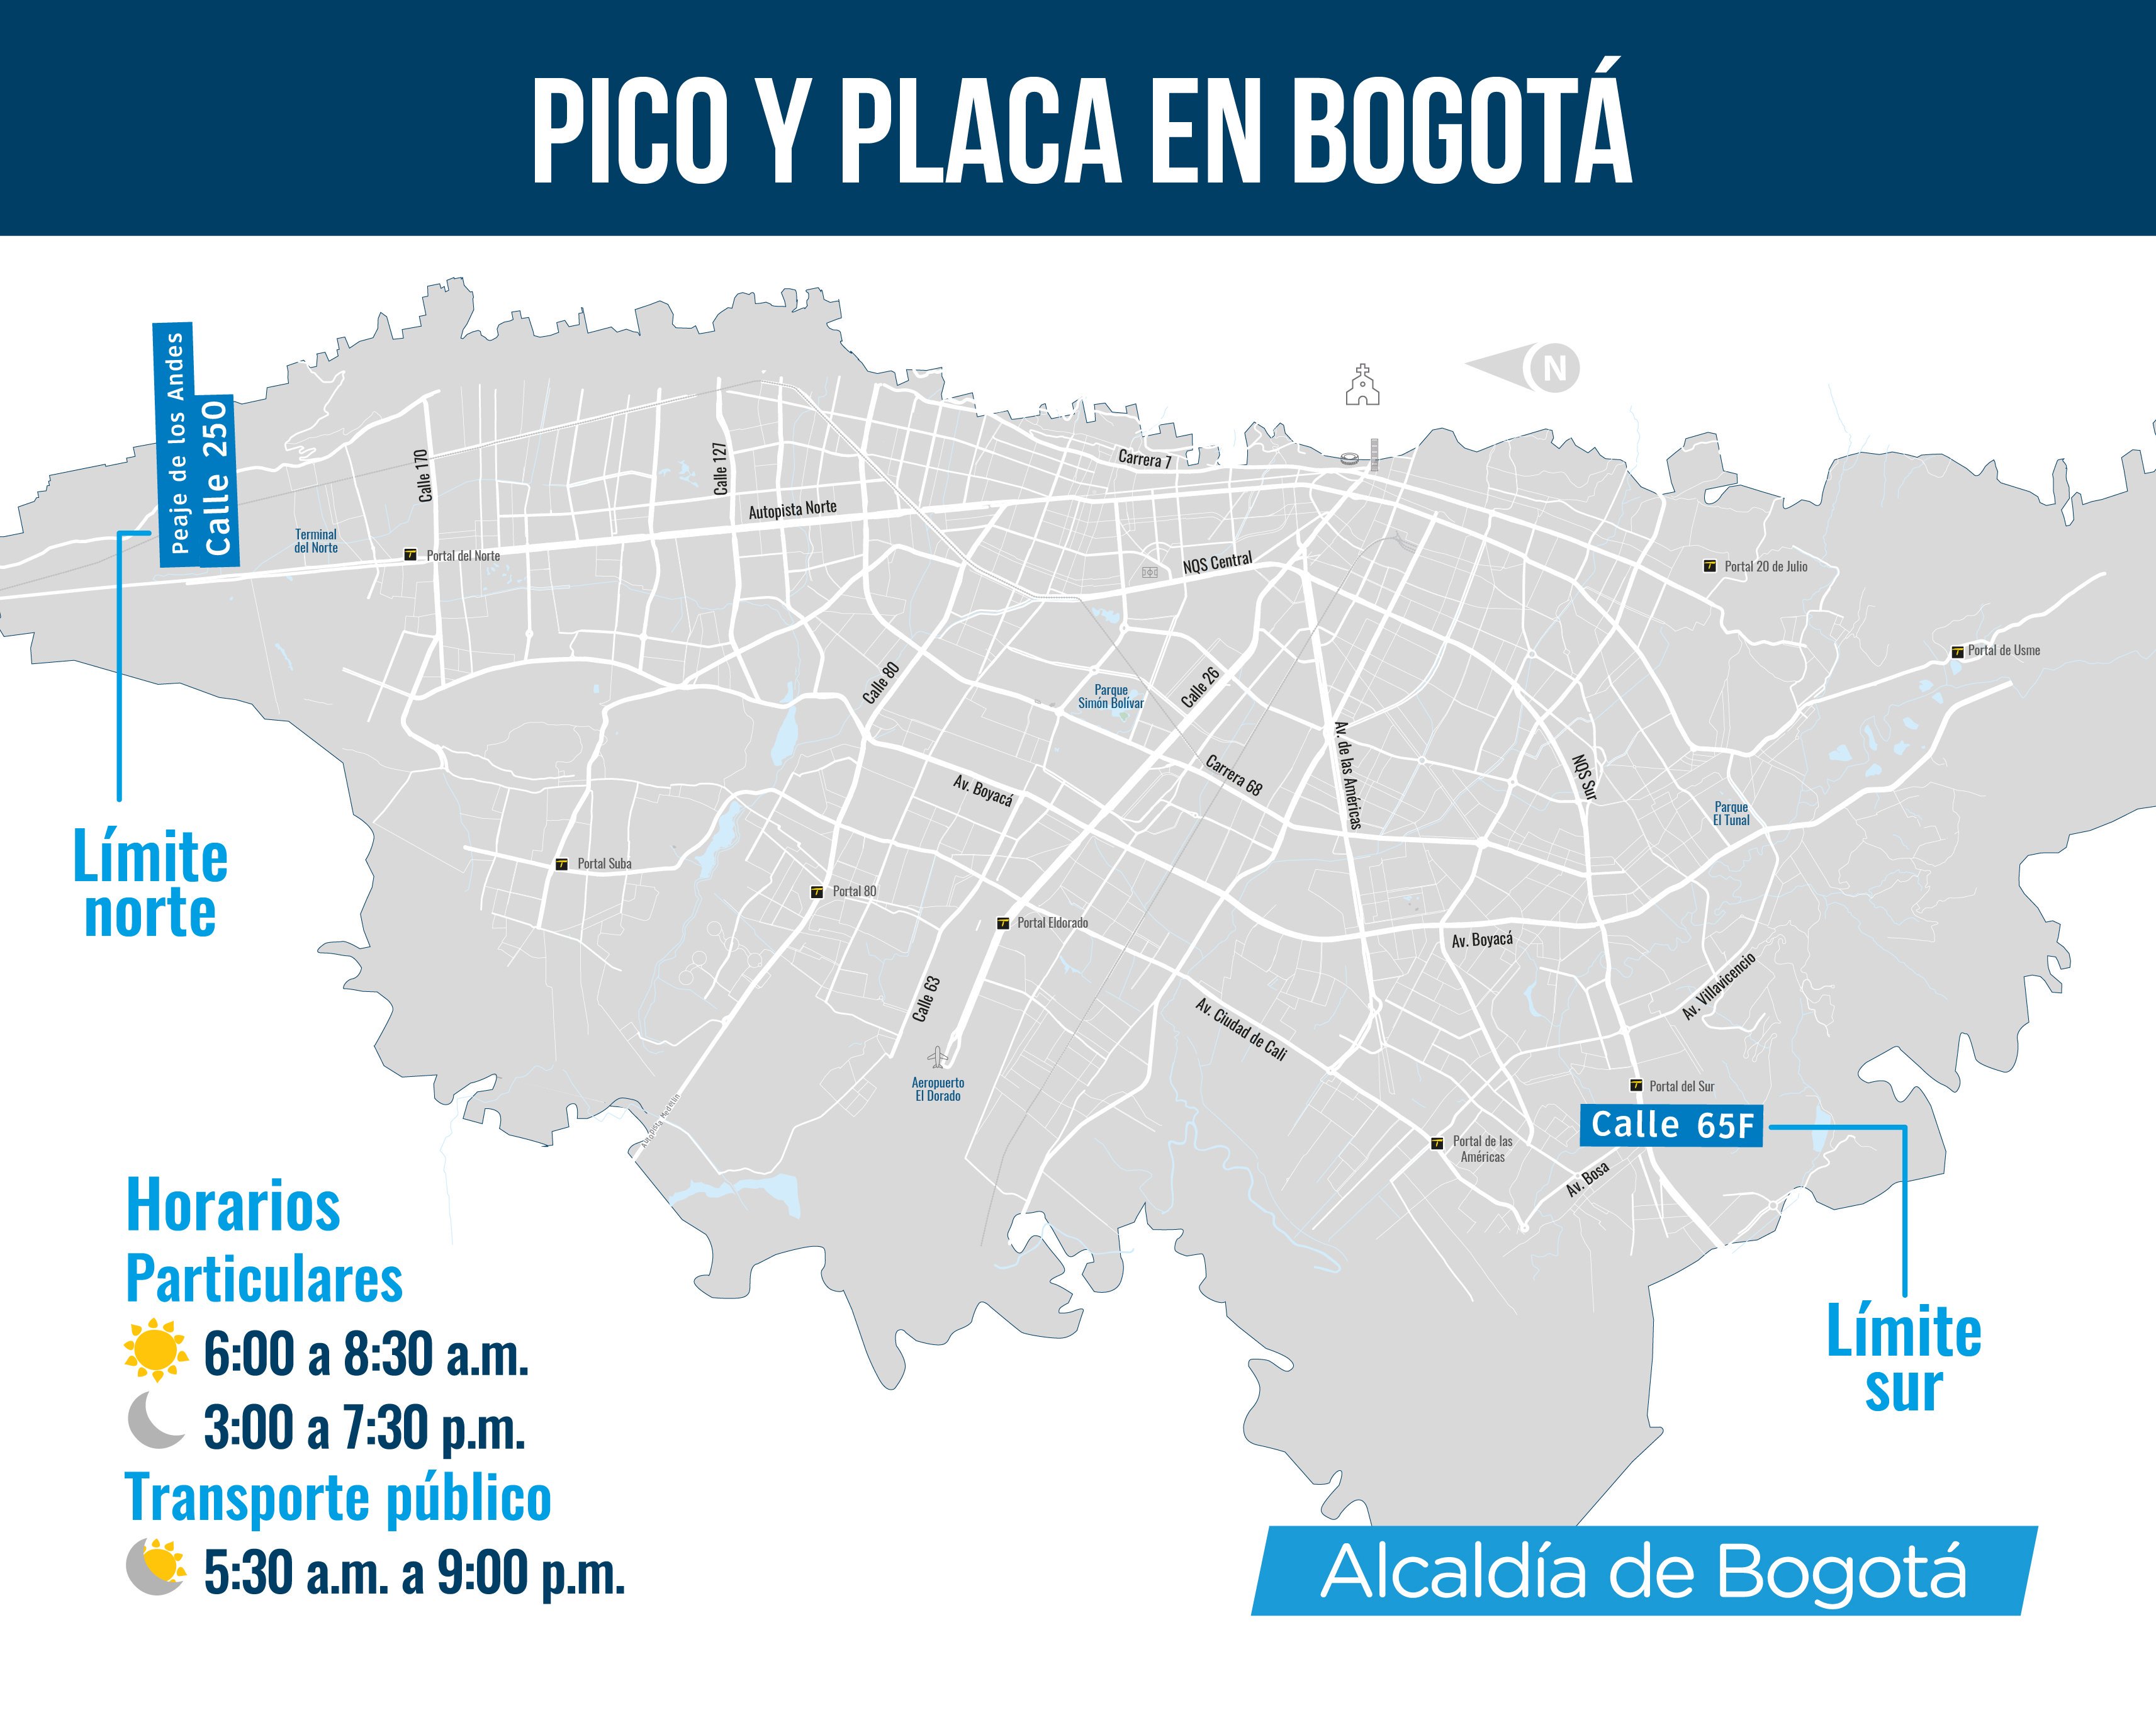 Mapa de Bogotá con el pico y placa establecido para el día 